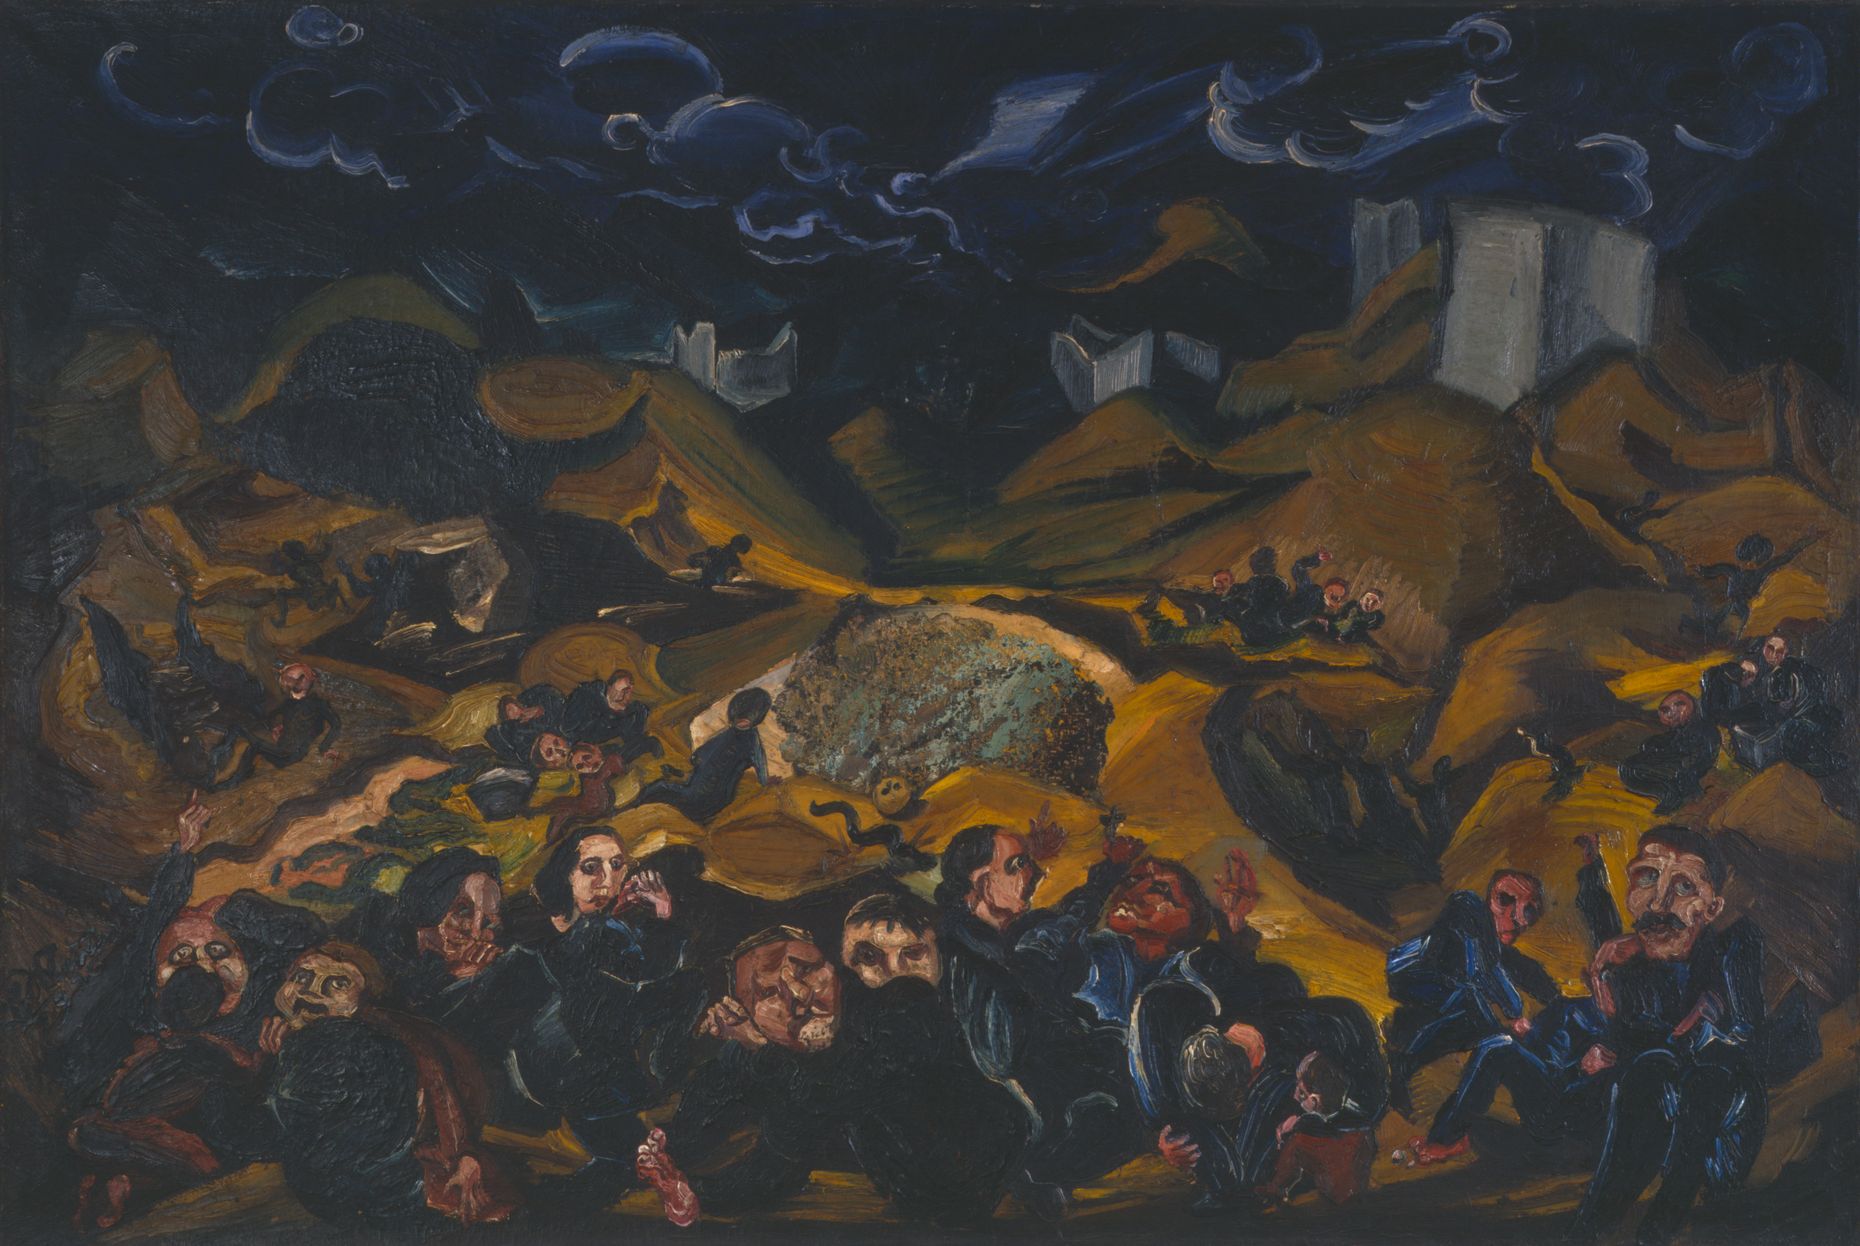 Gemälde von Ludwig Meidner, Öl auf Leinwand, 100 x 150 cm